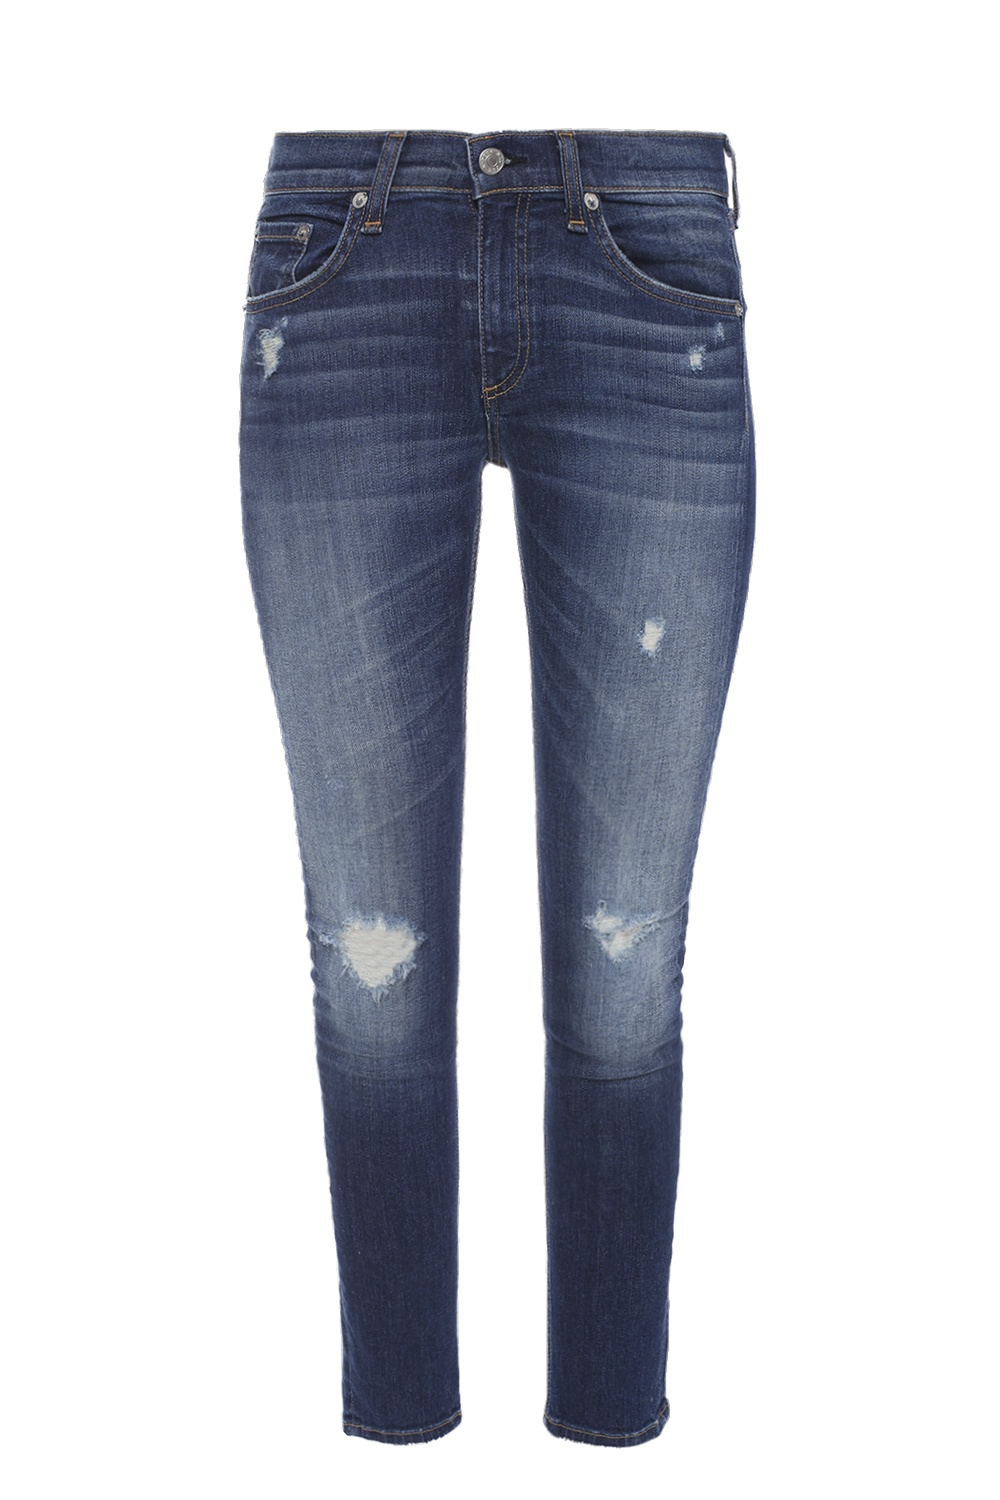 capri jeans australia